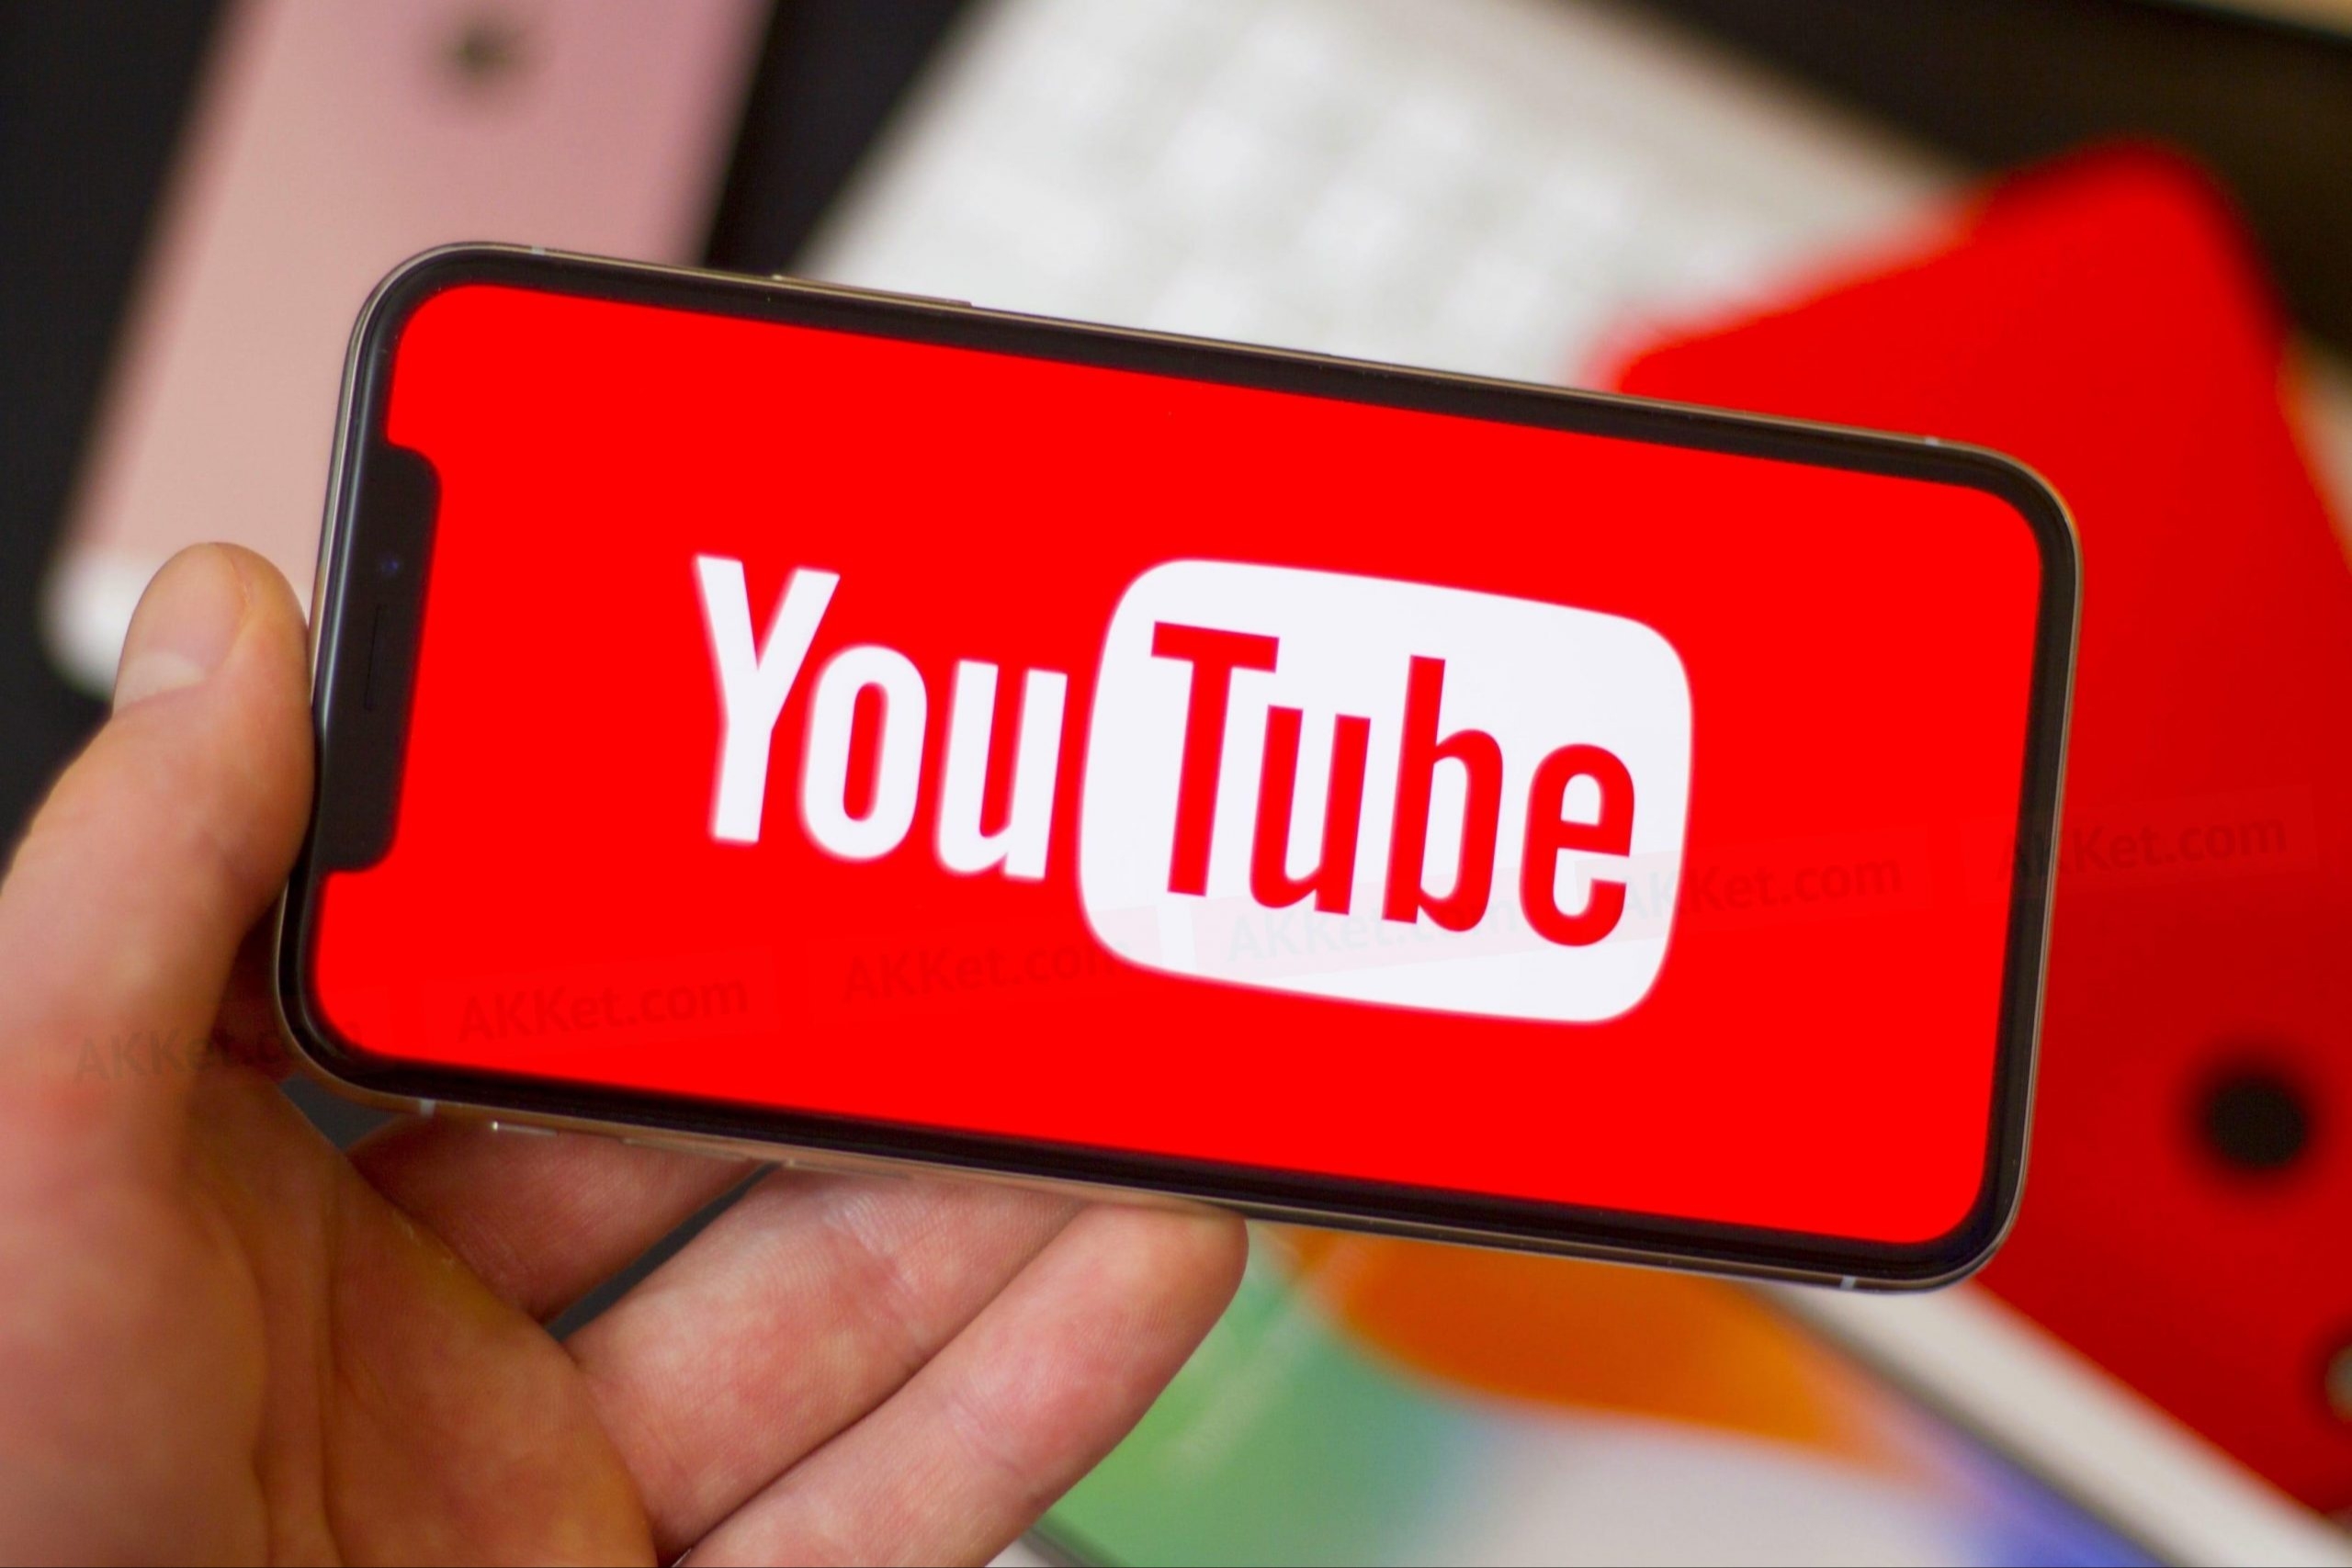 Технические проблемы с оборудованием Google в РФ могут повлиять на работу YouTube